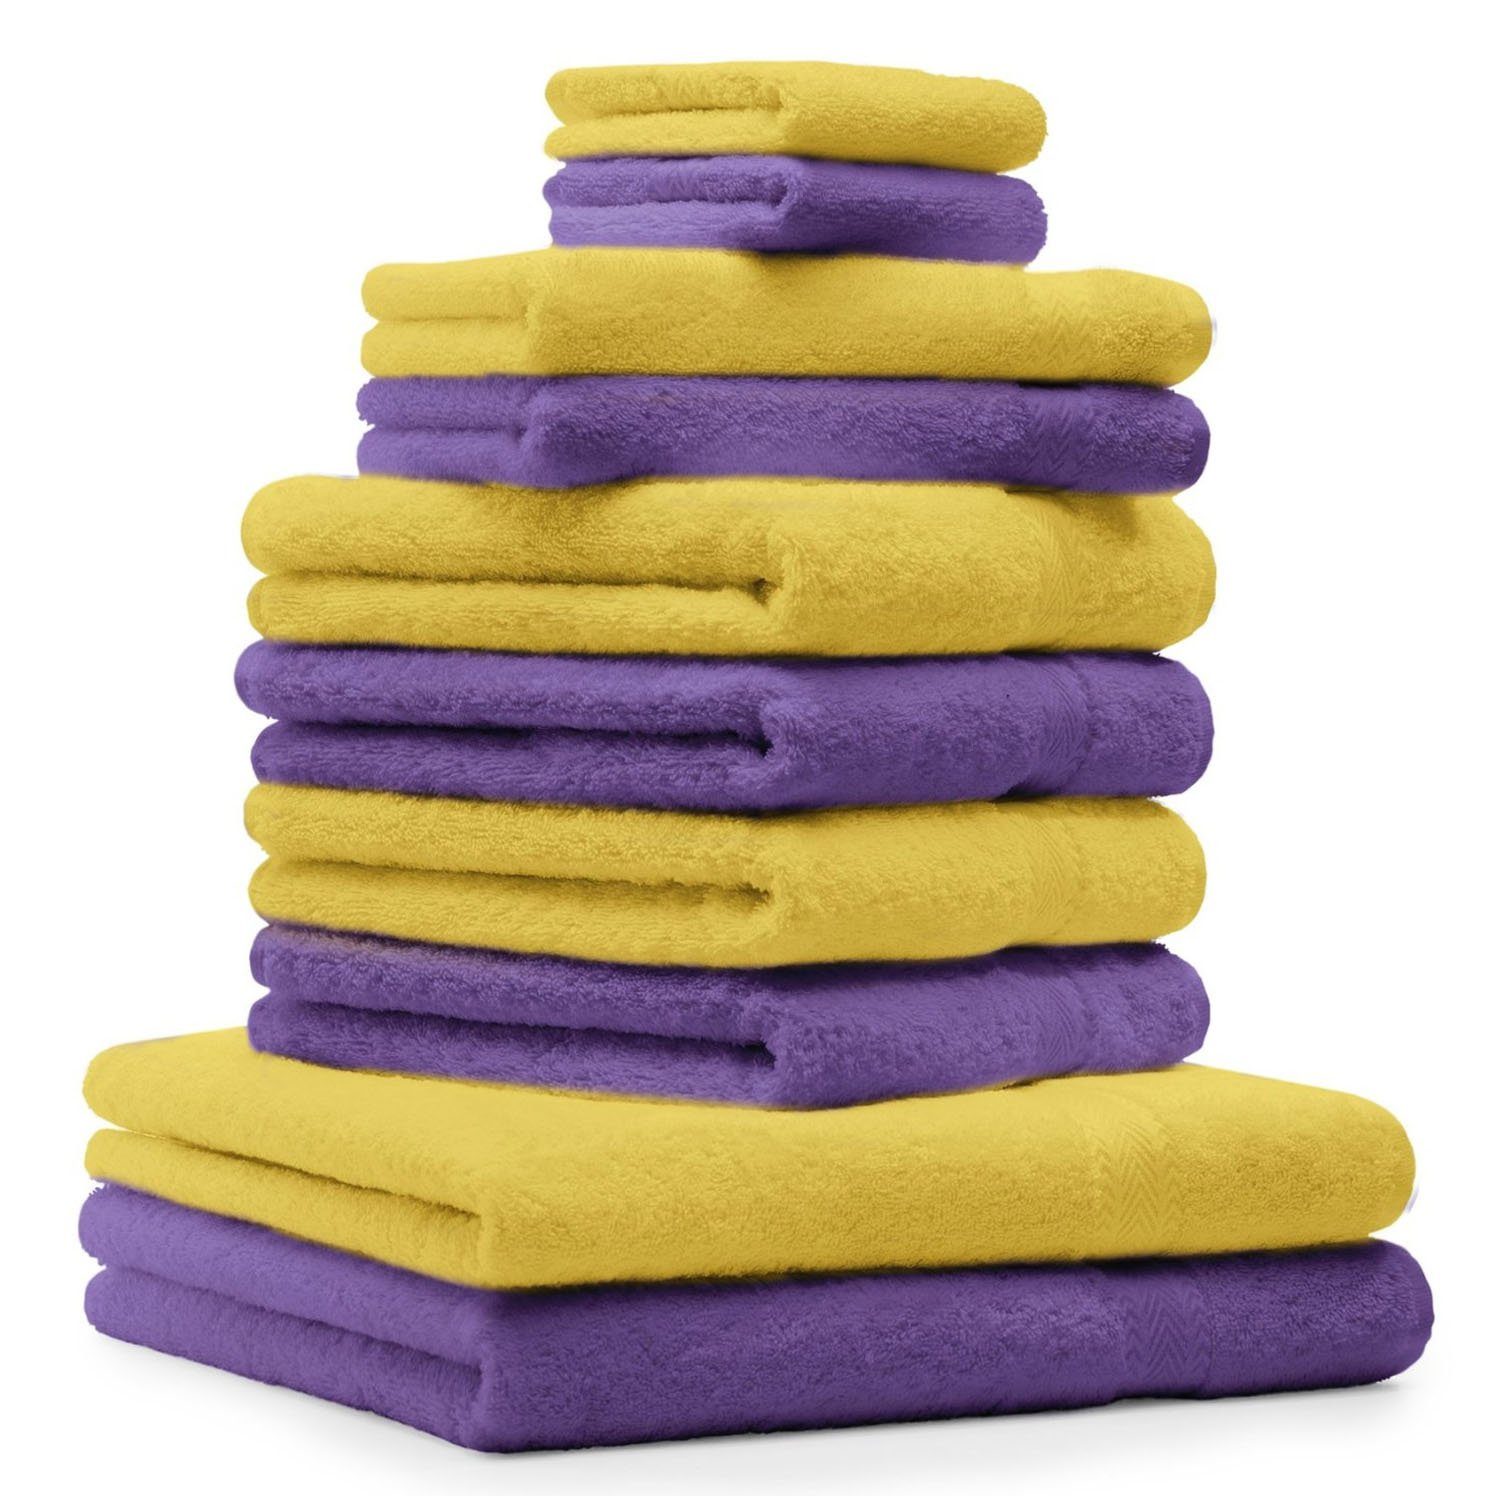 [Wir haben auch eine große Auswahl!] Betz Handtuch Set 10-TLG. Farbe und gelb, lila Handtuch-Set 100% Baumwolle Classic